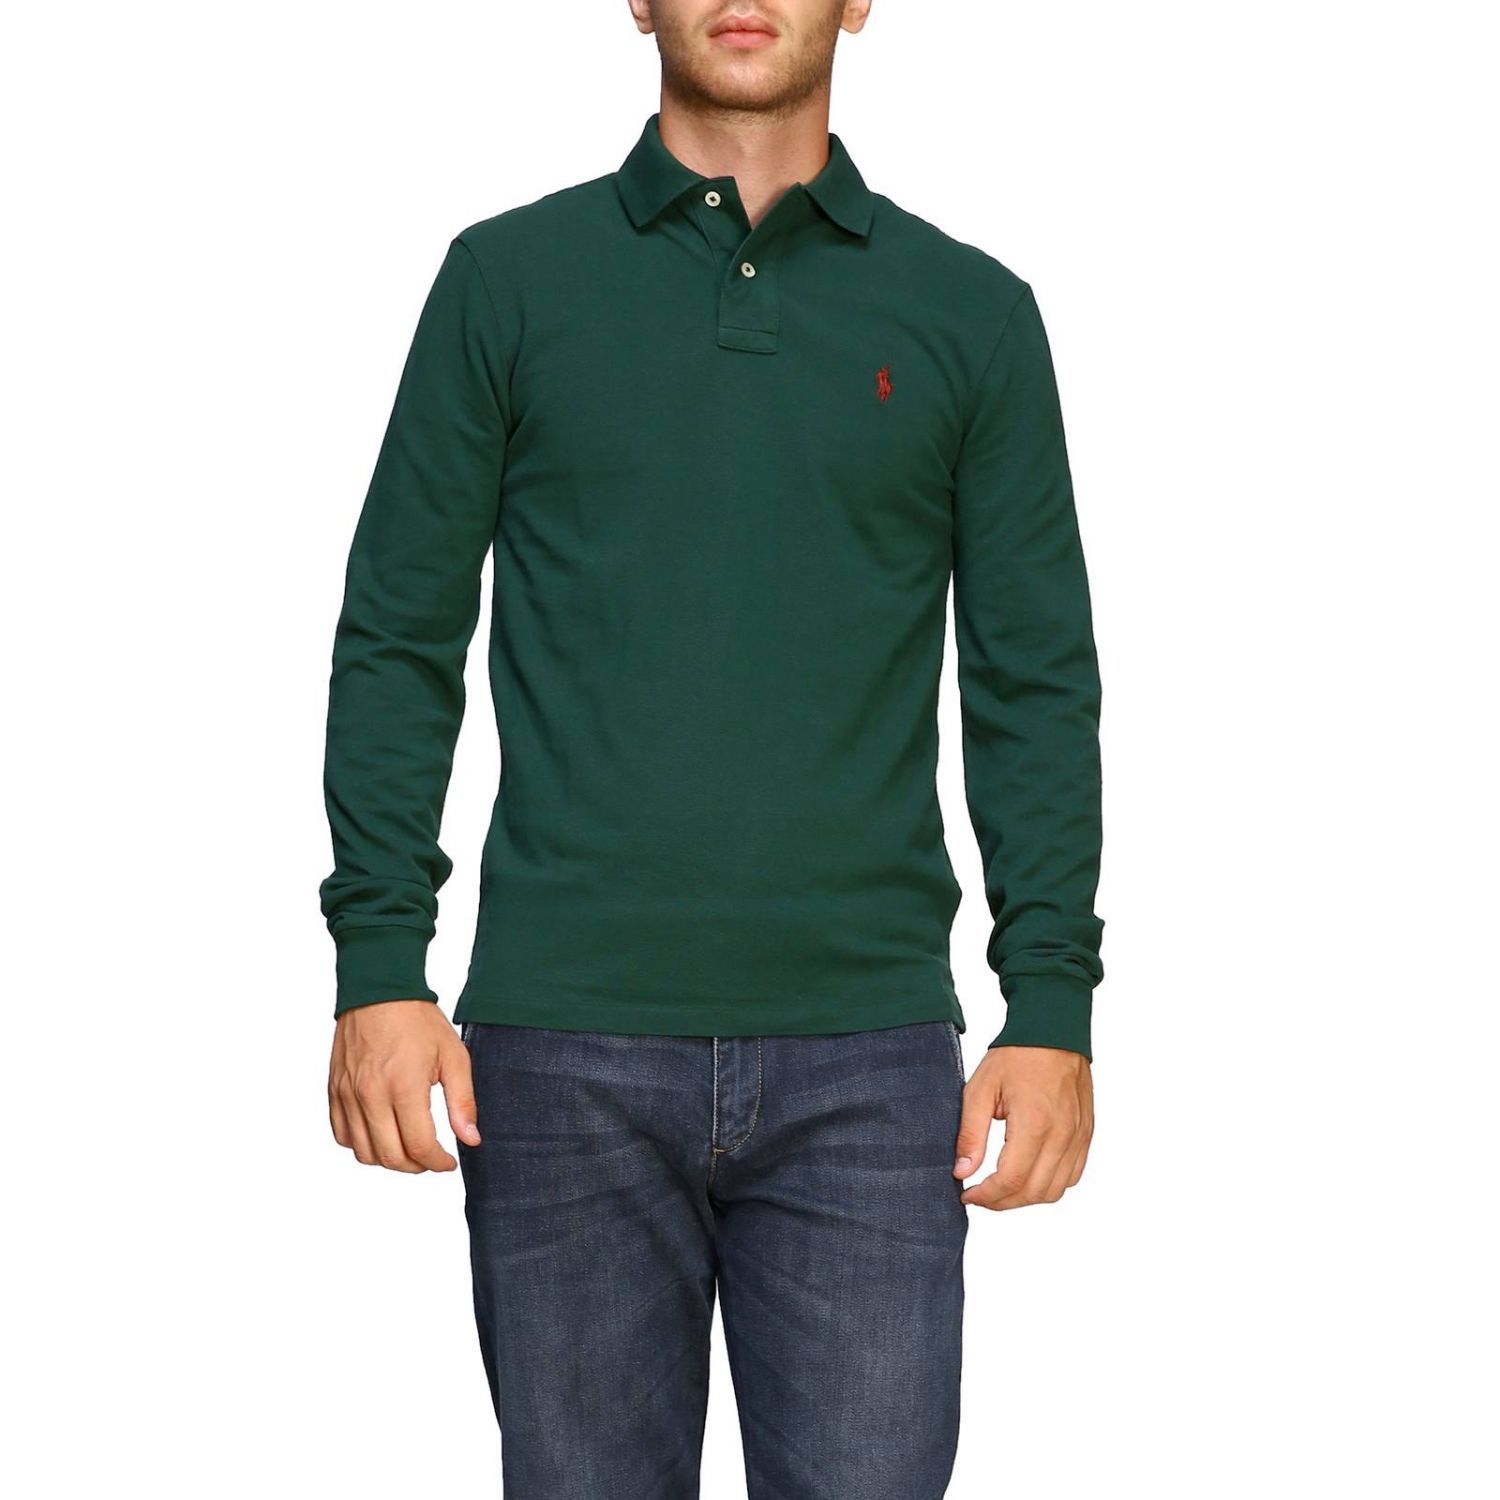 Polo Ralph Lauren Outlet: polo shirt for men - Forest Green | Polo Ralph  Lauren polo shirt 710681126 online on 